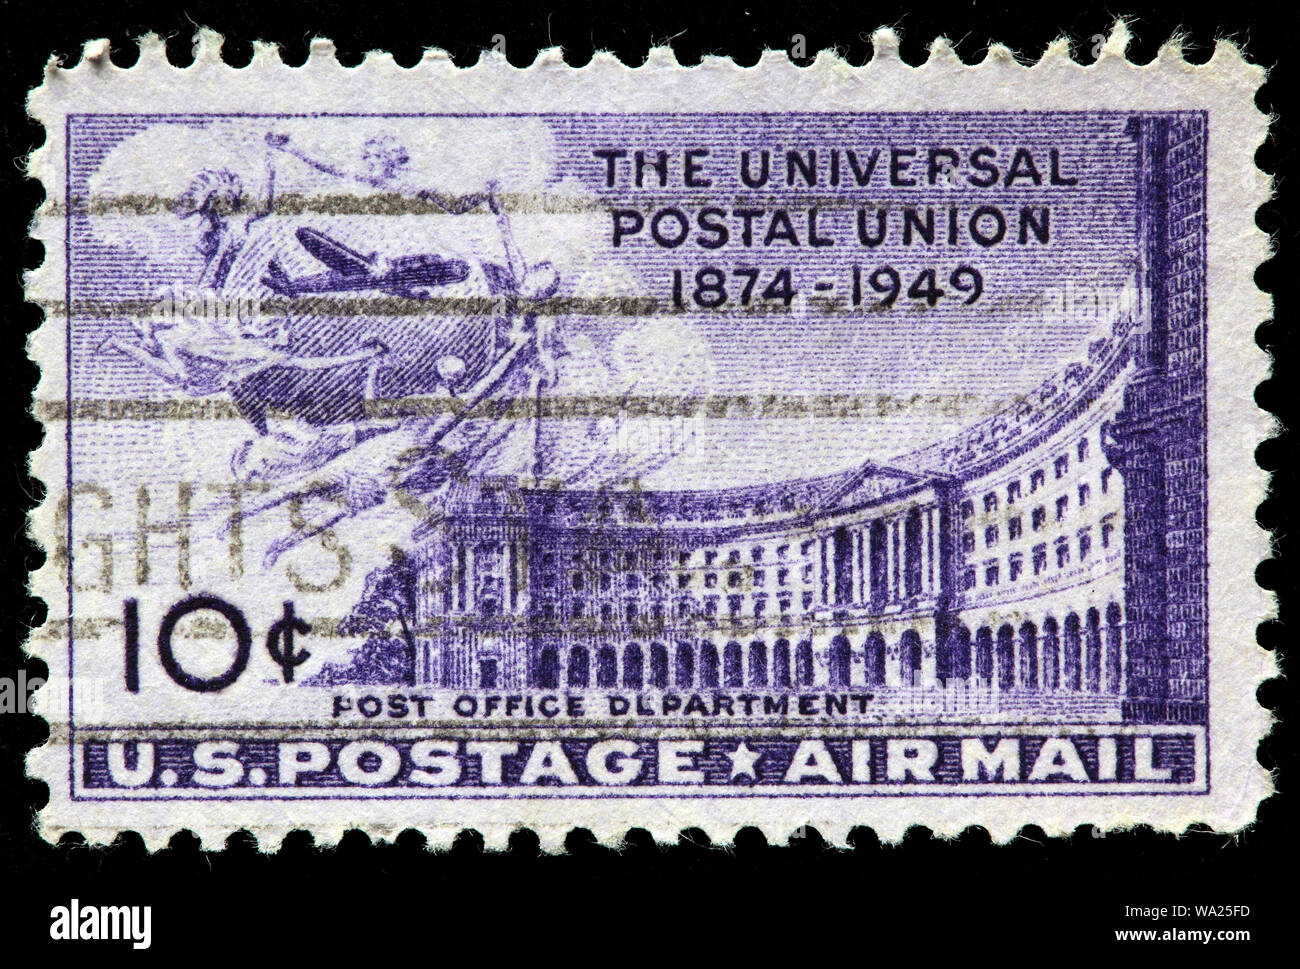 Union postale universelle Banque d'image et photos - Alamy